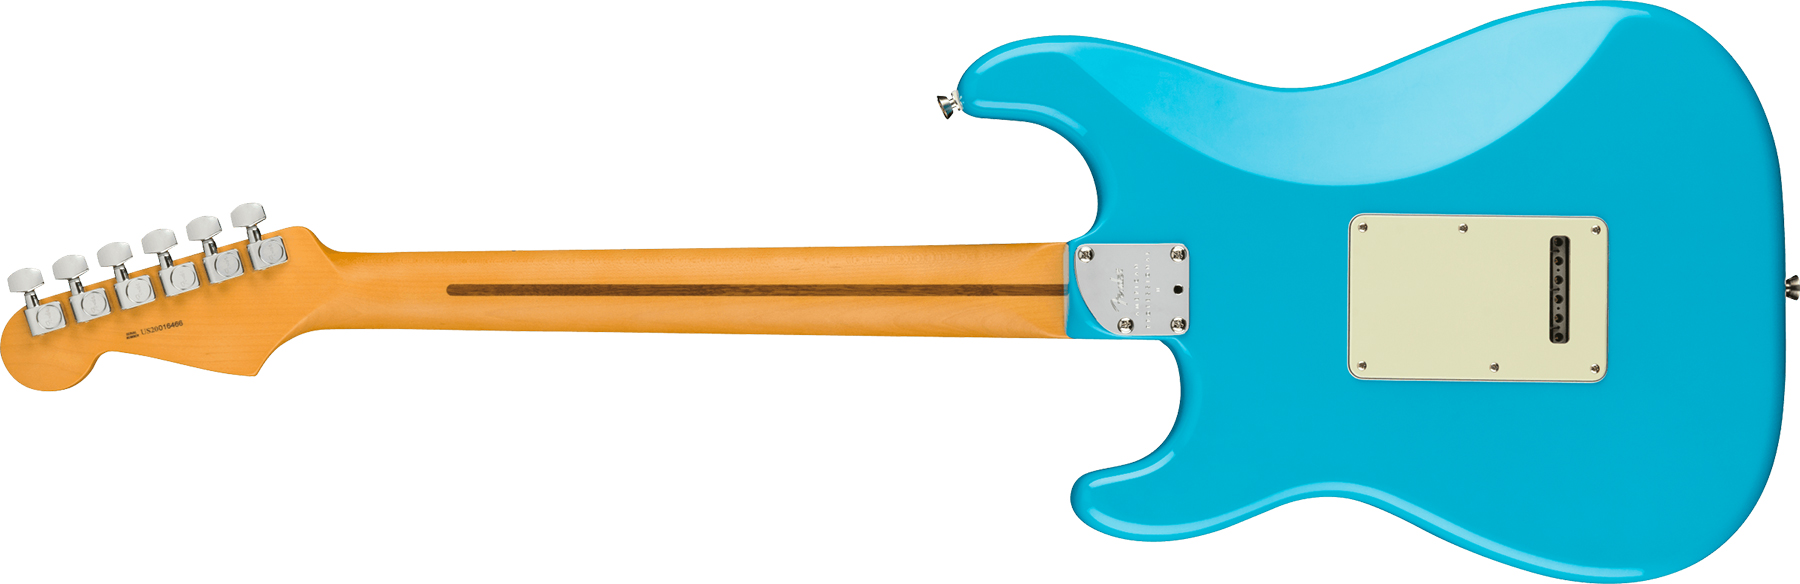 Fender Strat American Professional Ii Usa Mn - Miami Blue - Elektrische gitaar in Str-vorm - Variation 1